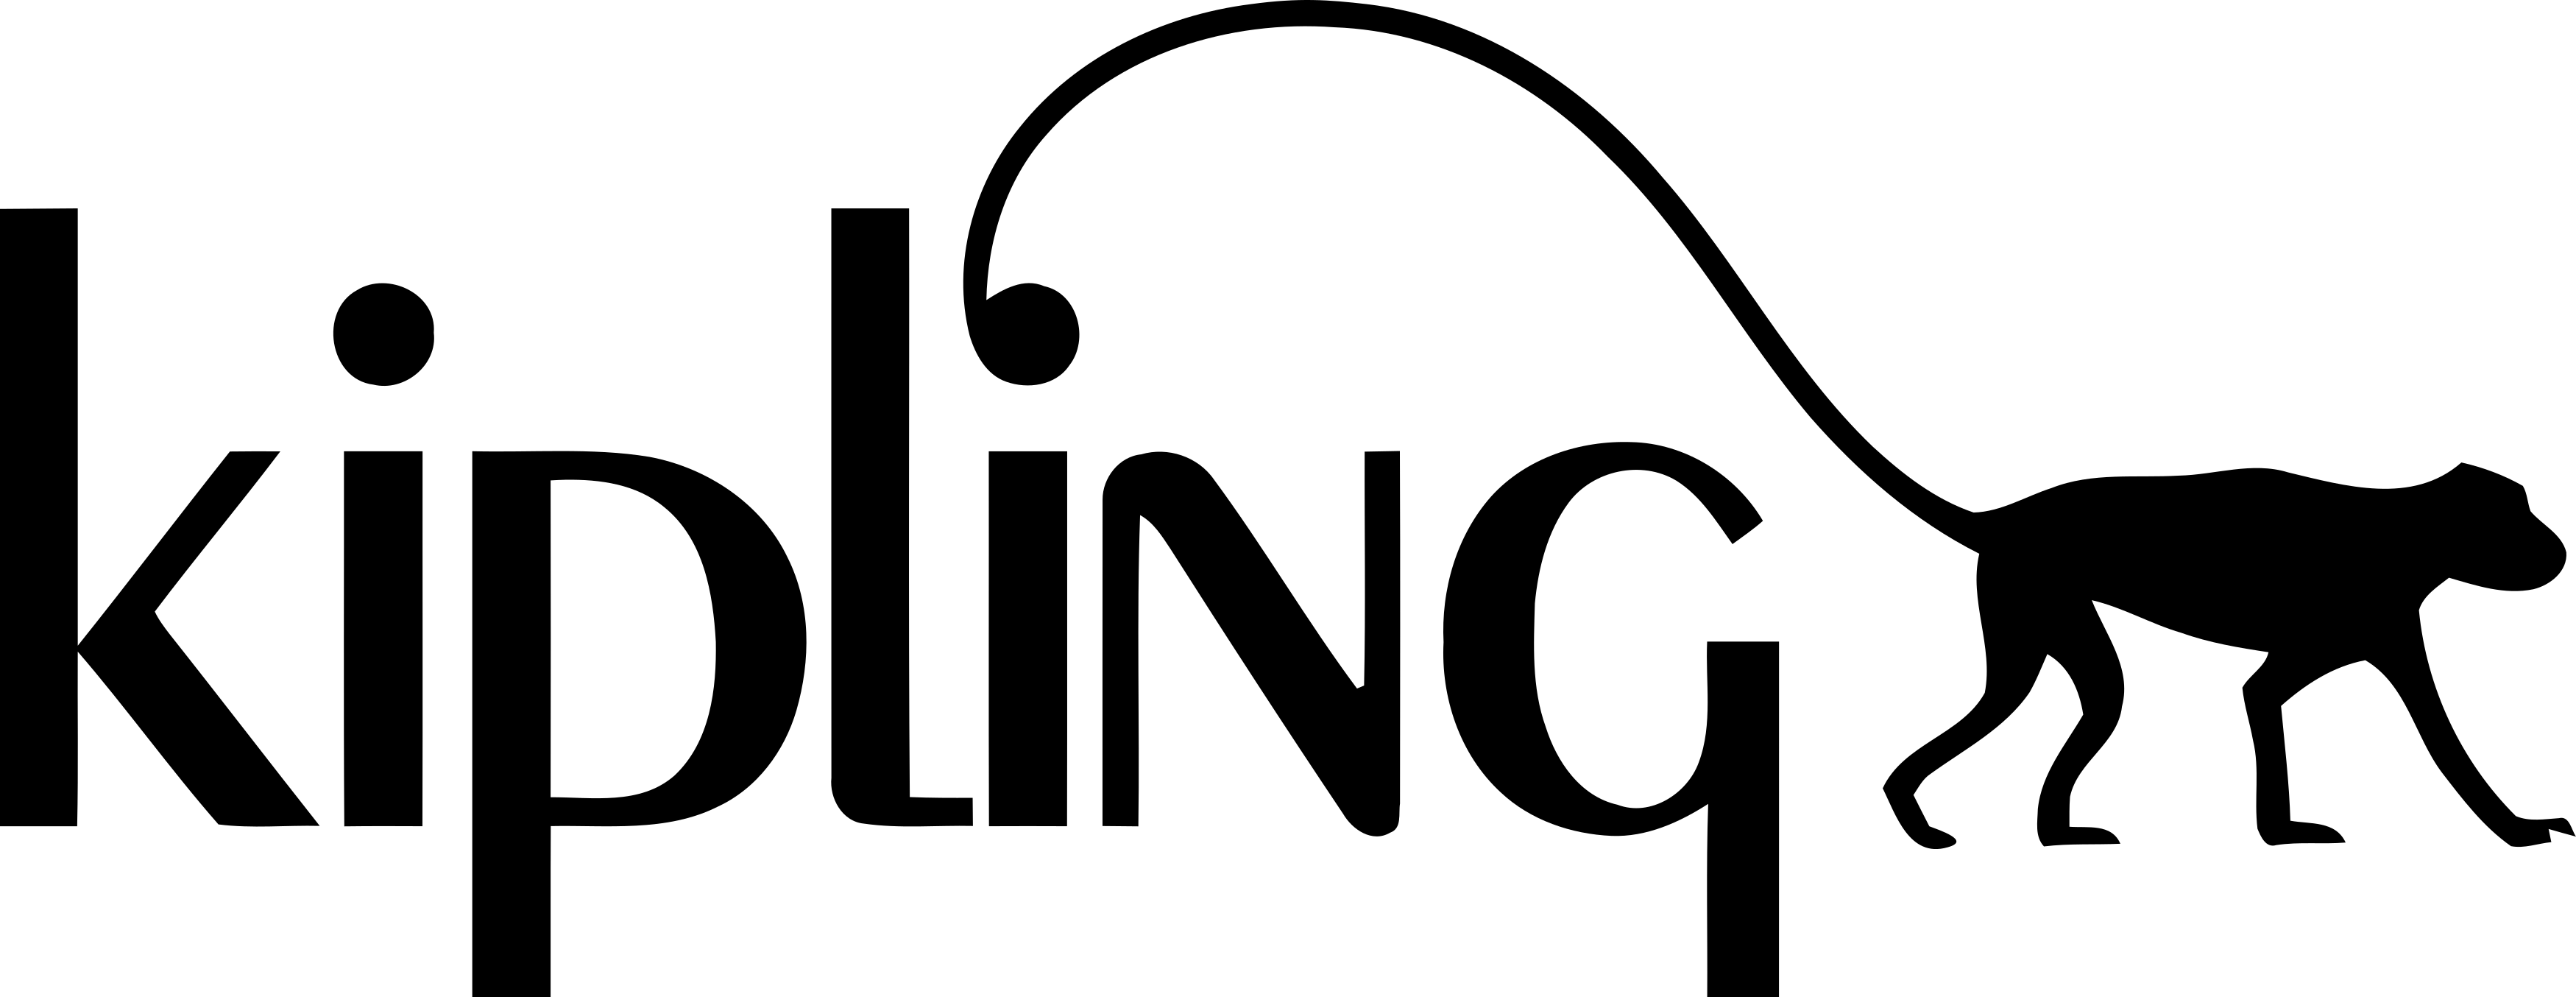 Kipling logo.